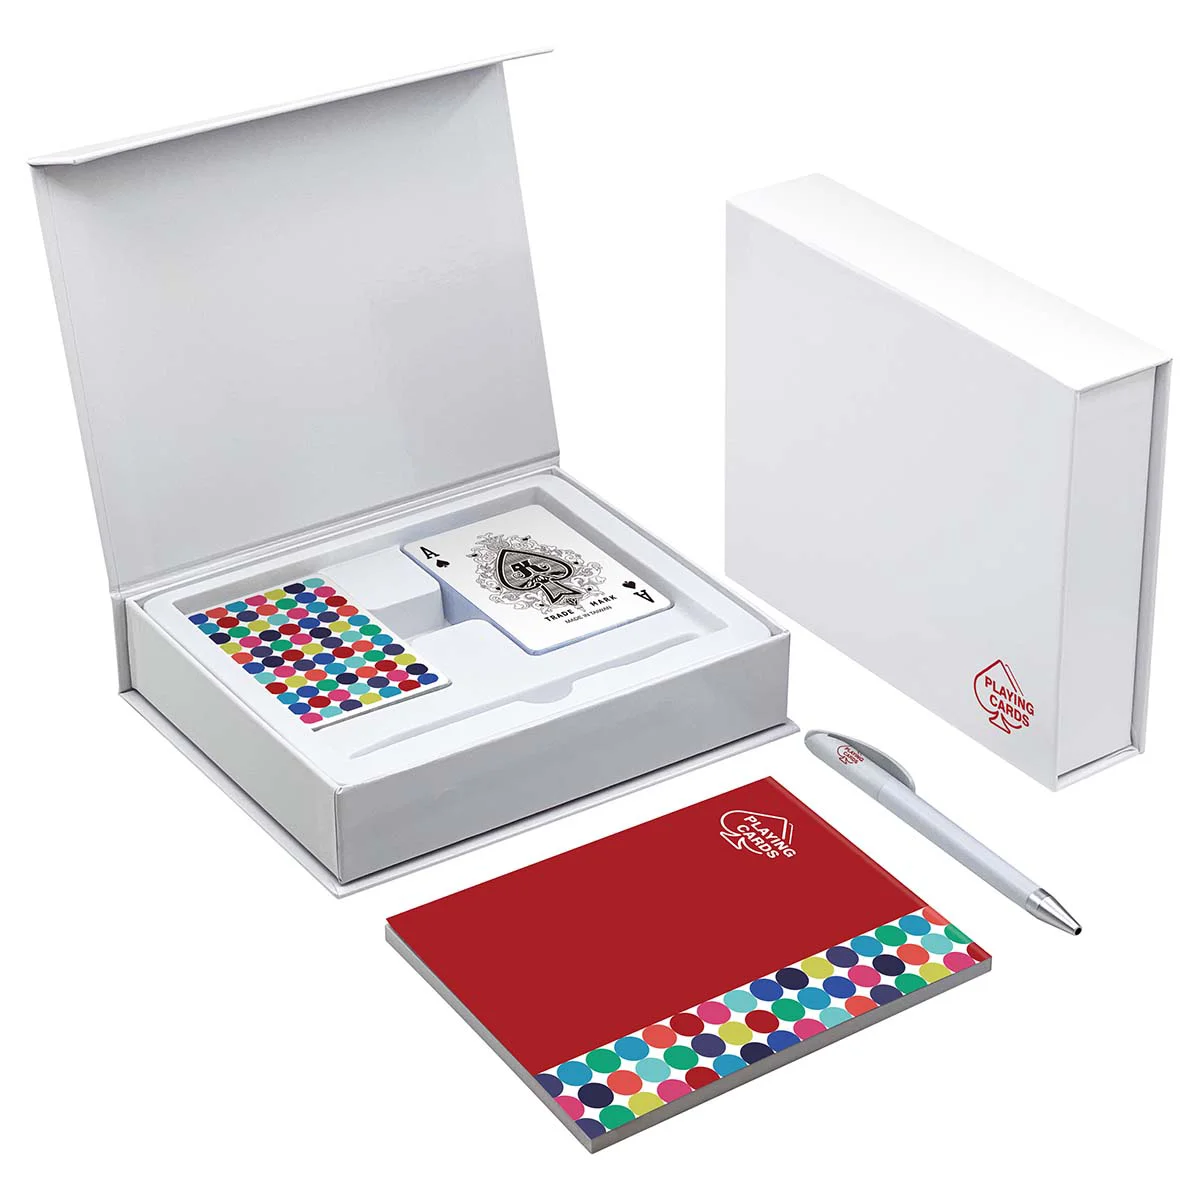 Коробка с откидной крышкой для 2 колод карт для игры в бридж (с блокнотом и ручкой)